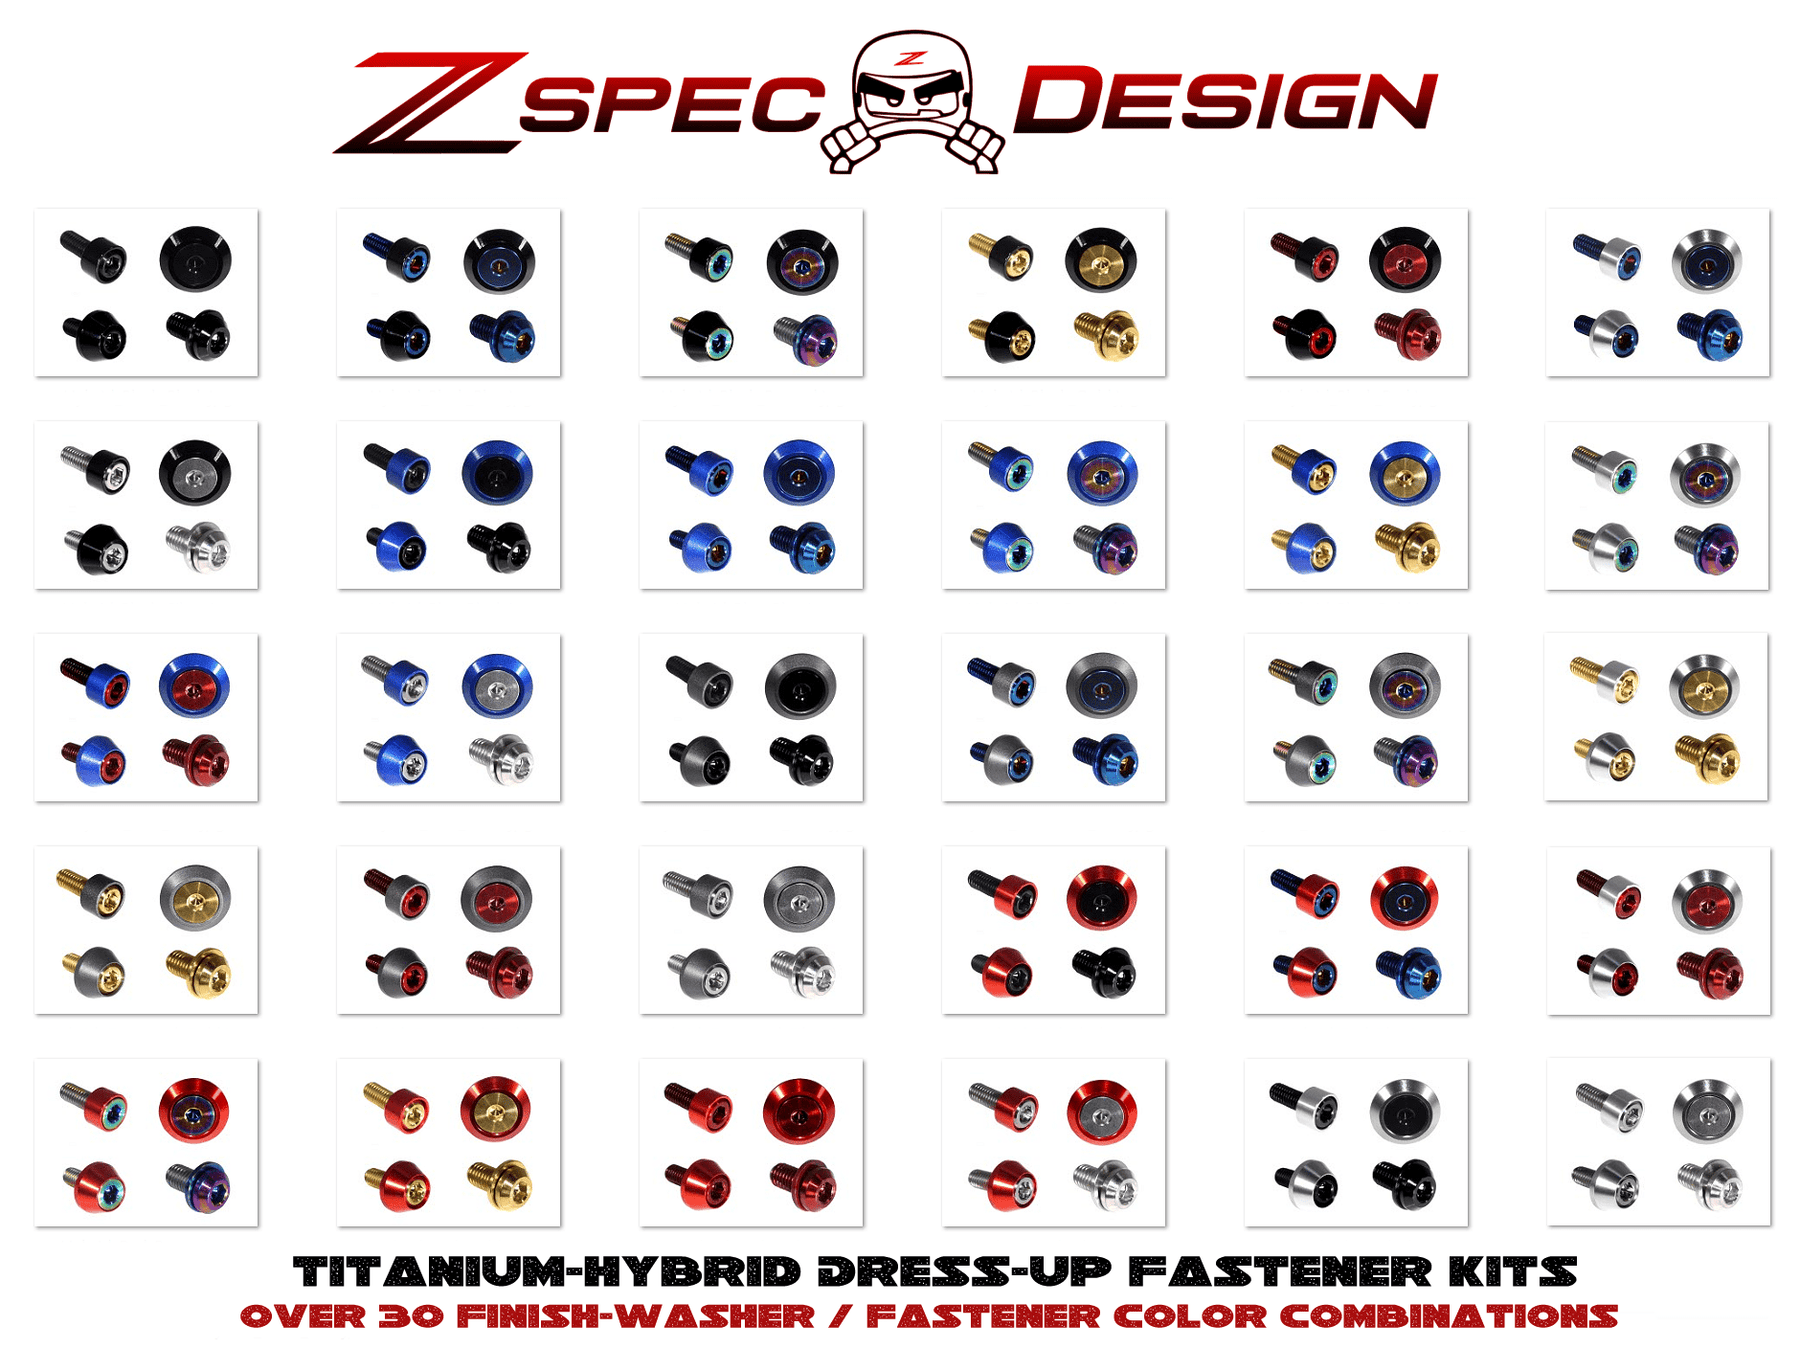 ZSPEC Essentials Fastener Kit for Nissan Skyline GT-R/GTR R35, Titanium/Billet GR5 Dress Up Bolts Fasteners Washers Billet Red Blue Purple Gold Burned Black Grade-5